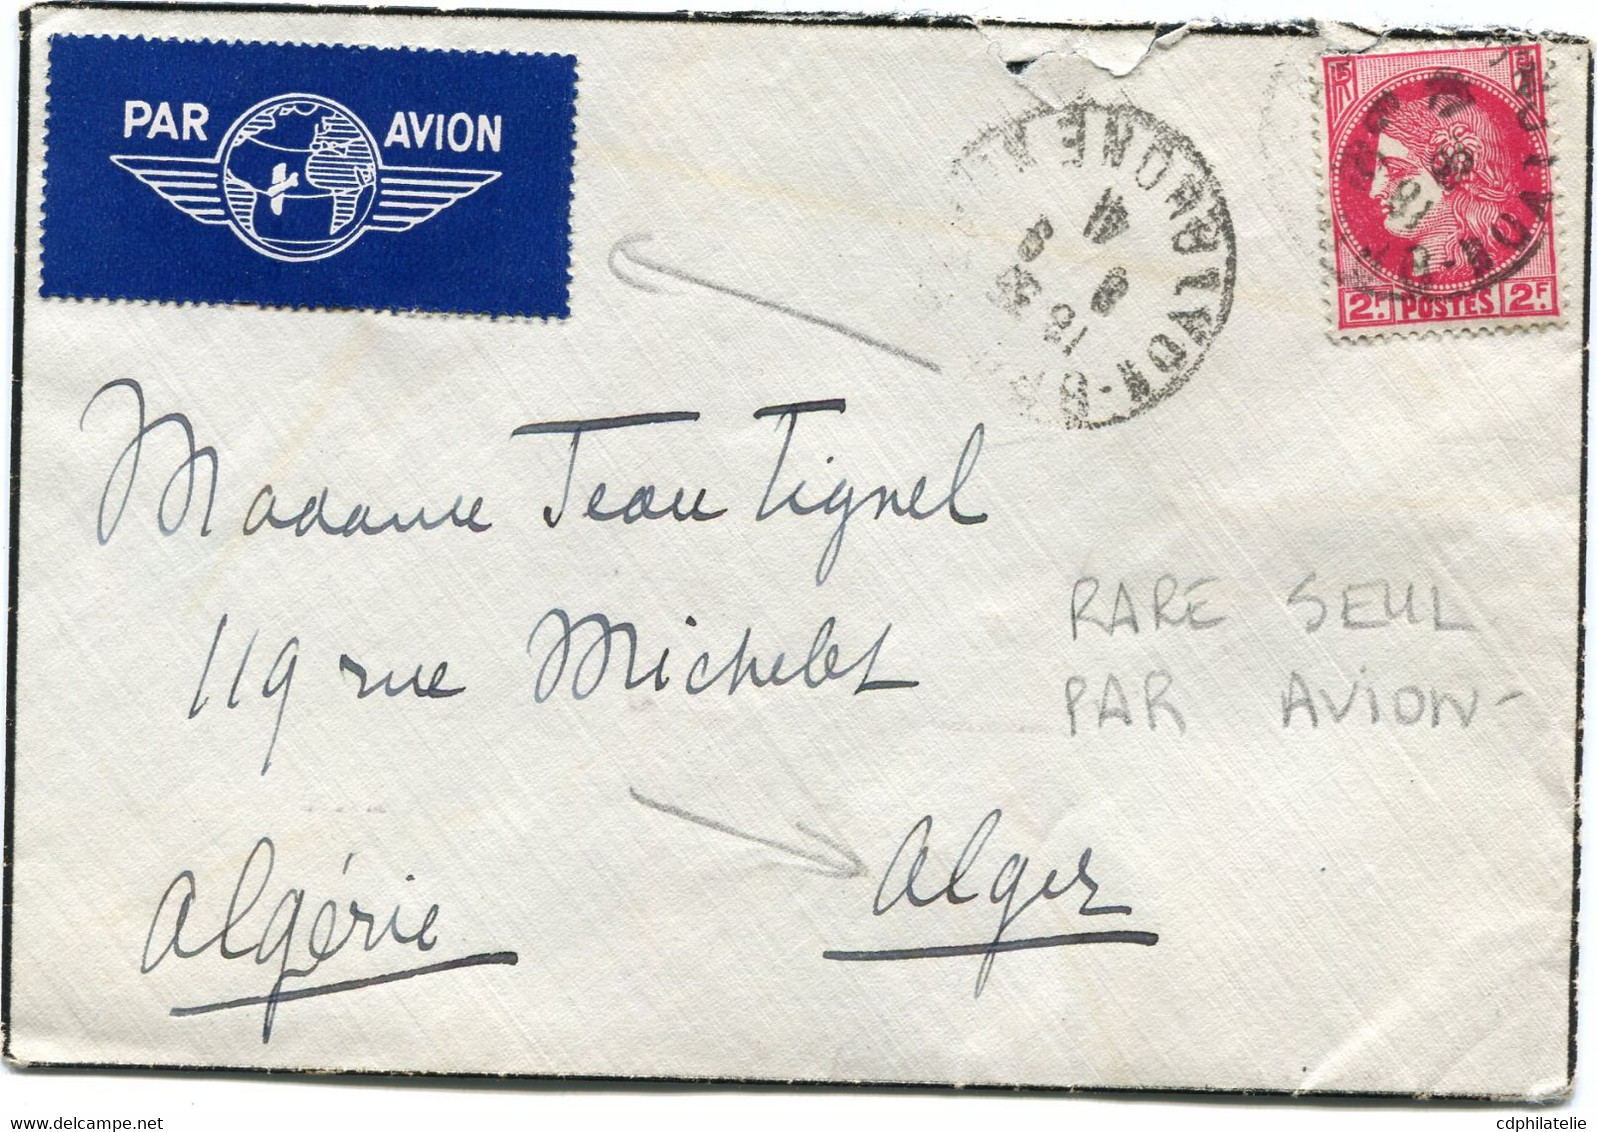 FRANCE LETTRE PAR AVION DEPART LYON-? 8-9-41 RHONE POUR L'ALGERIE - 1945-47 Ceres (Mazelin)